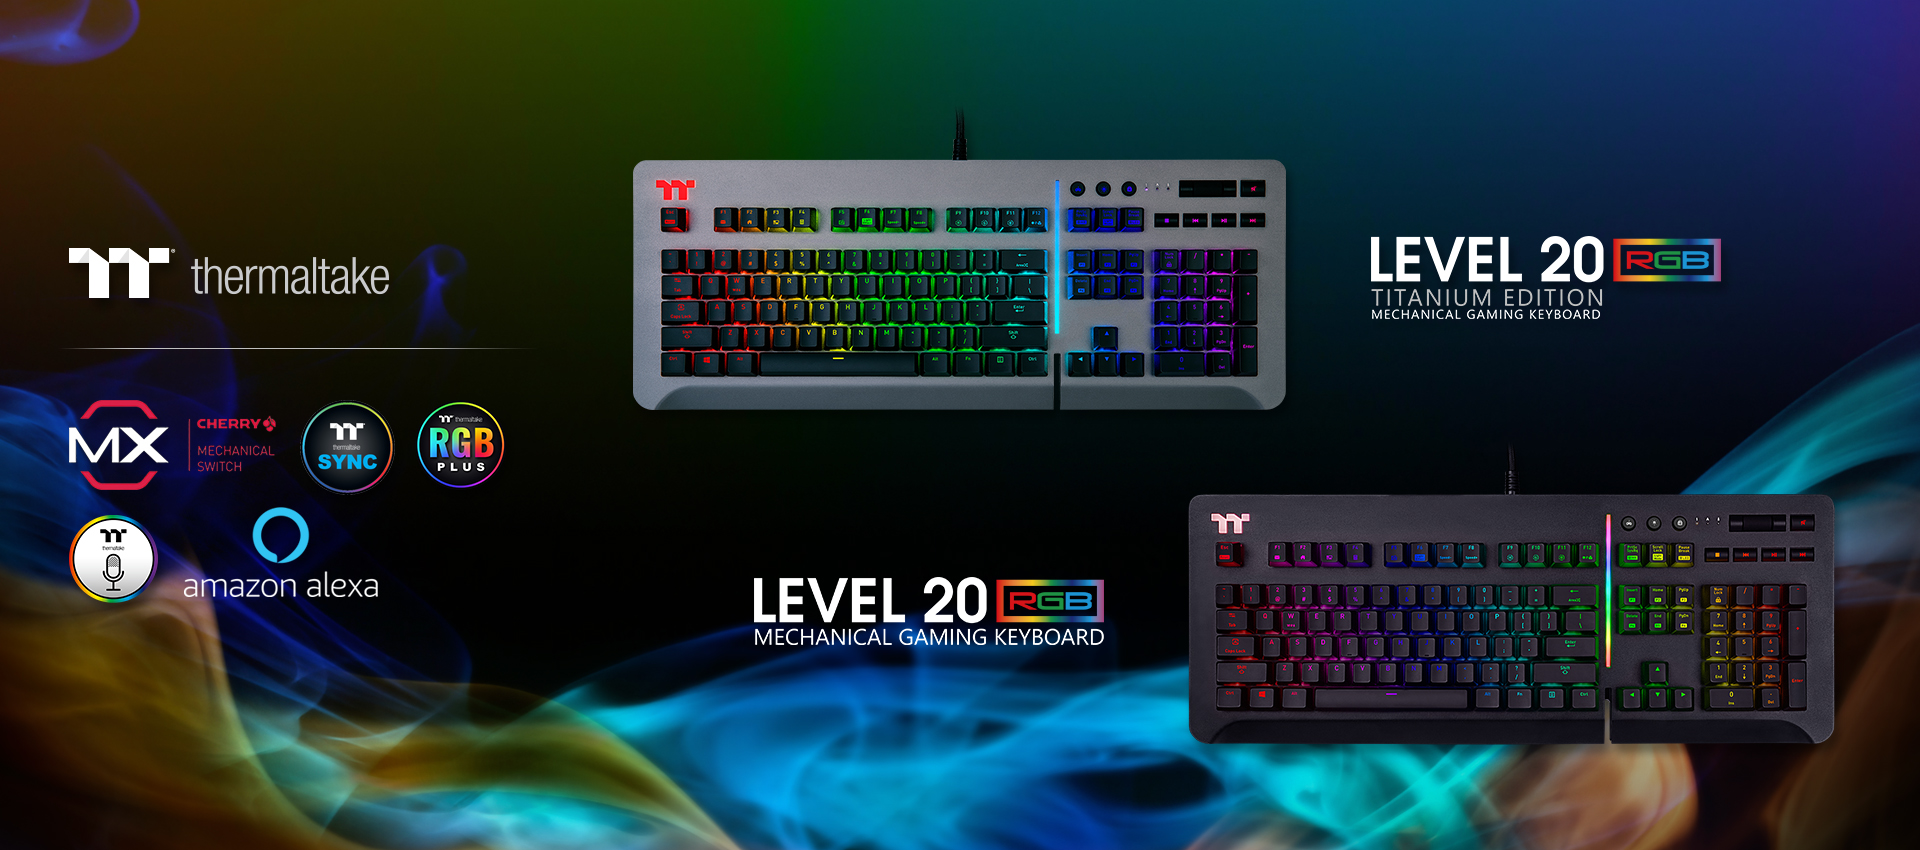 Level 20 RGB Titanium Gaming Keyboard